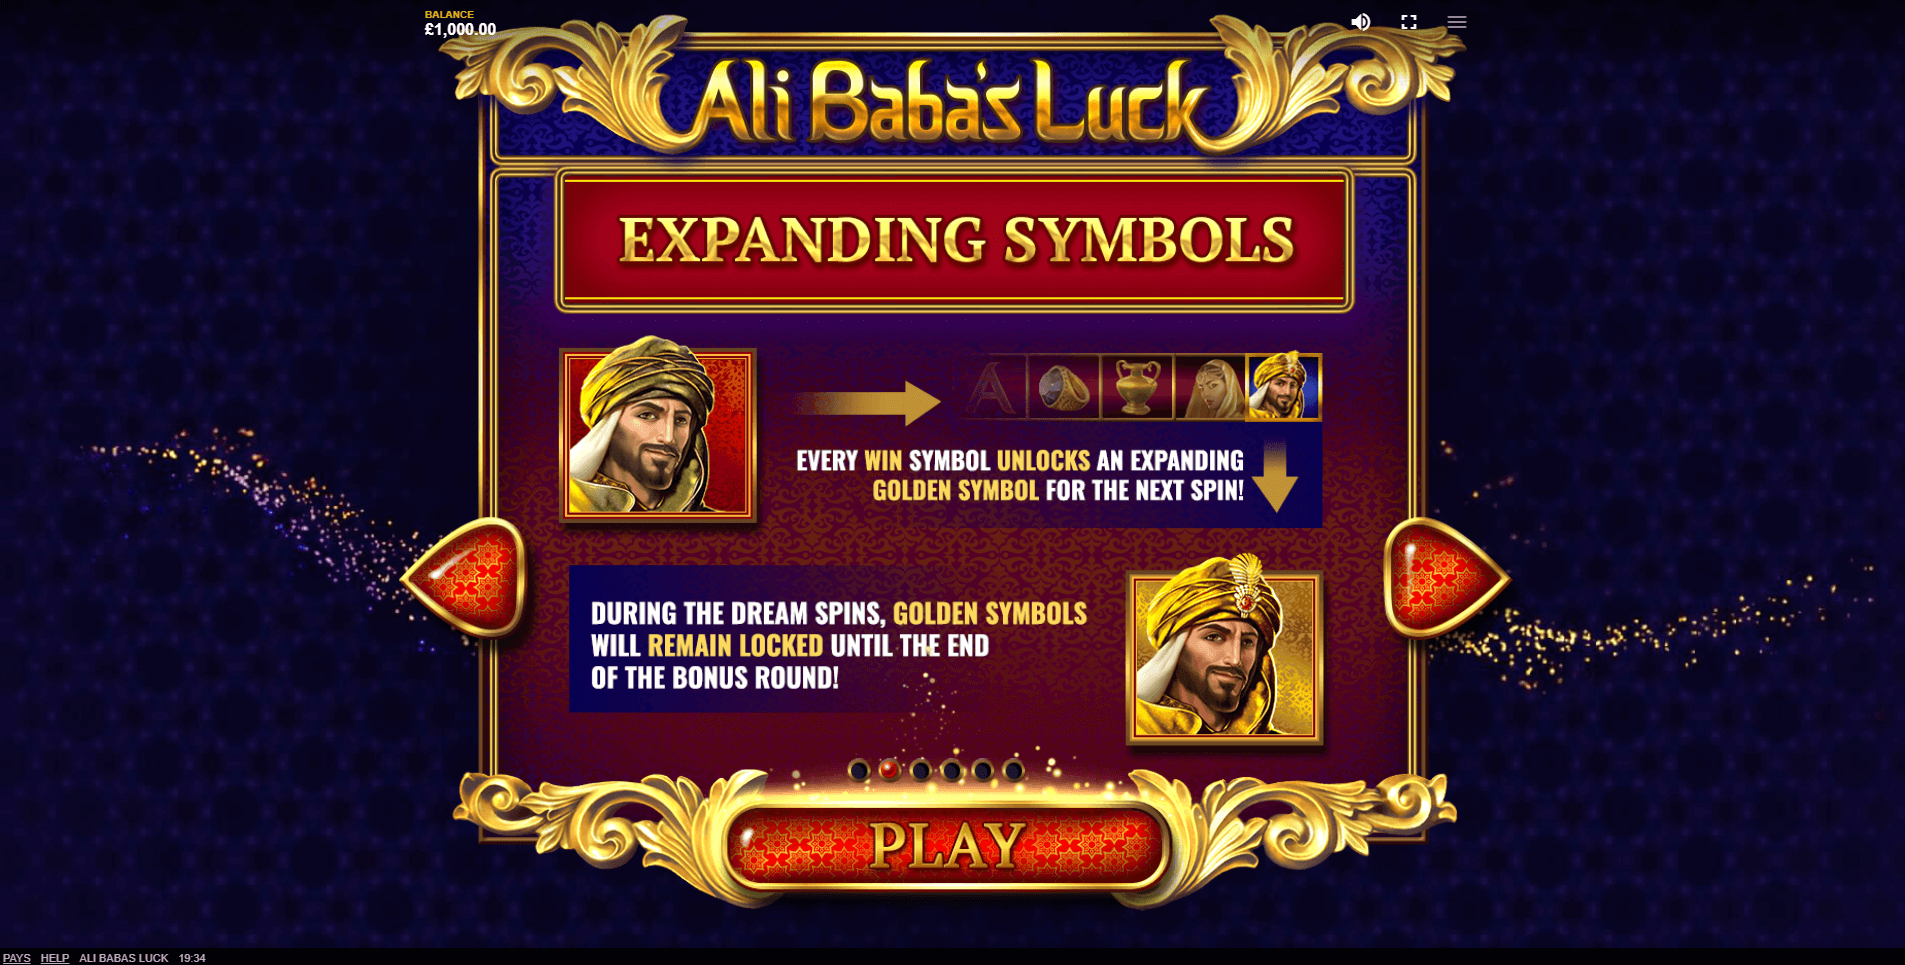 ali babas luck slot machine detail image 0